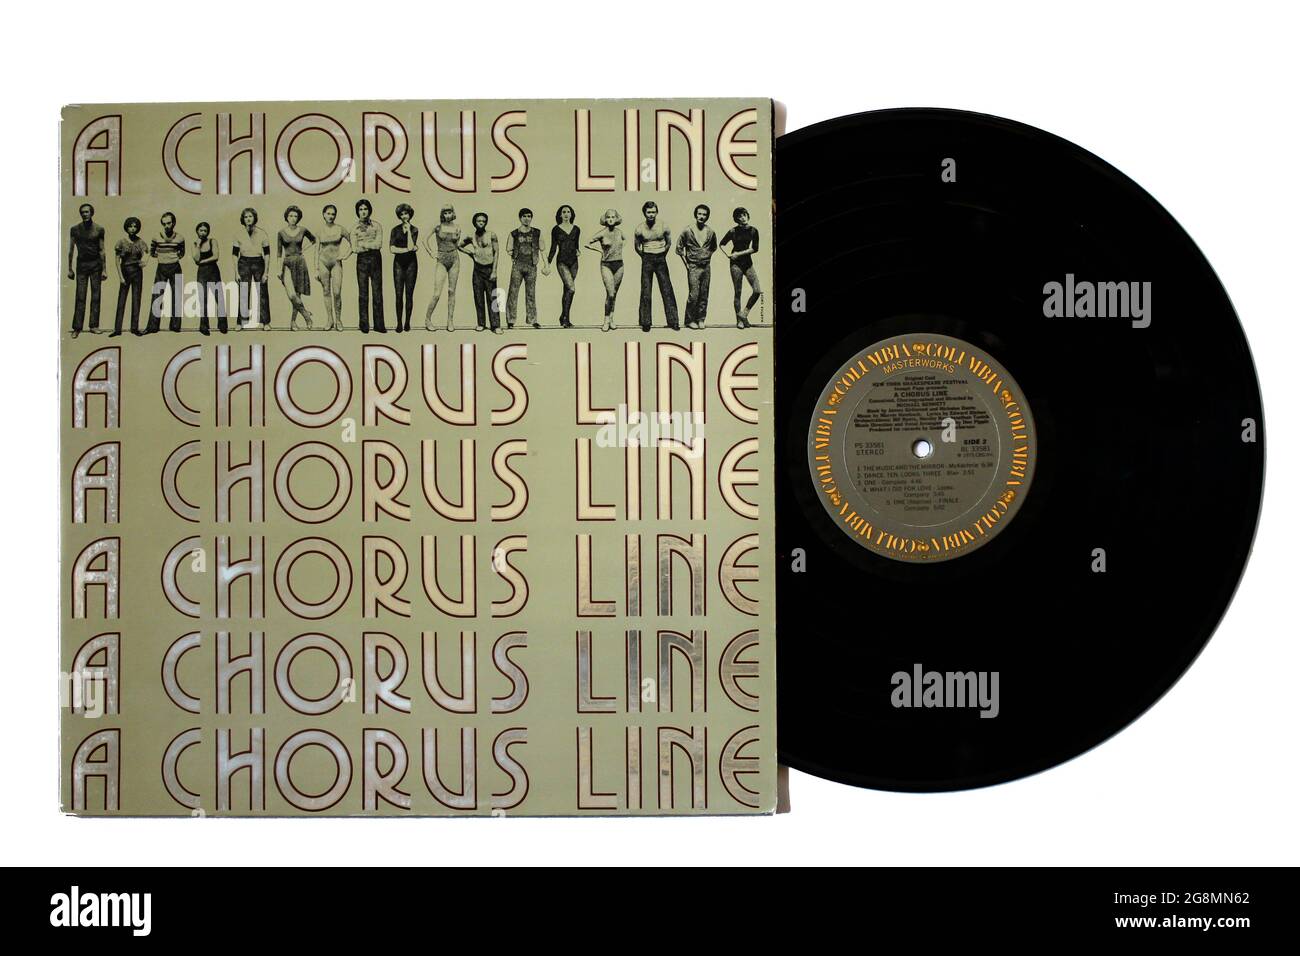 Broadway Musical per l'adattamento cinematografico 1985 di un album musicale Chorus Line su disco LP con dischi in vinile. Copertina album Foto Stock